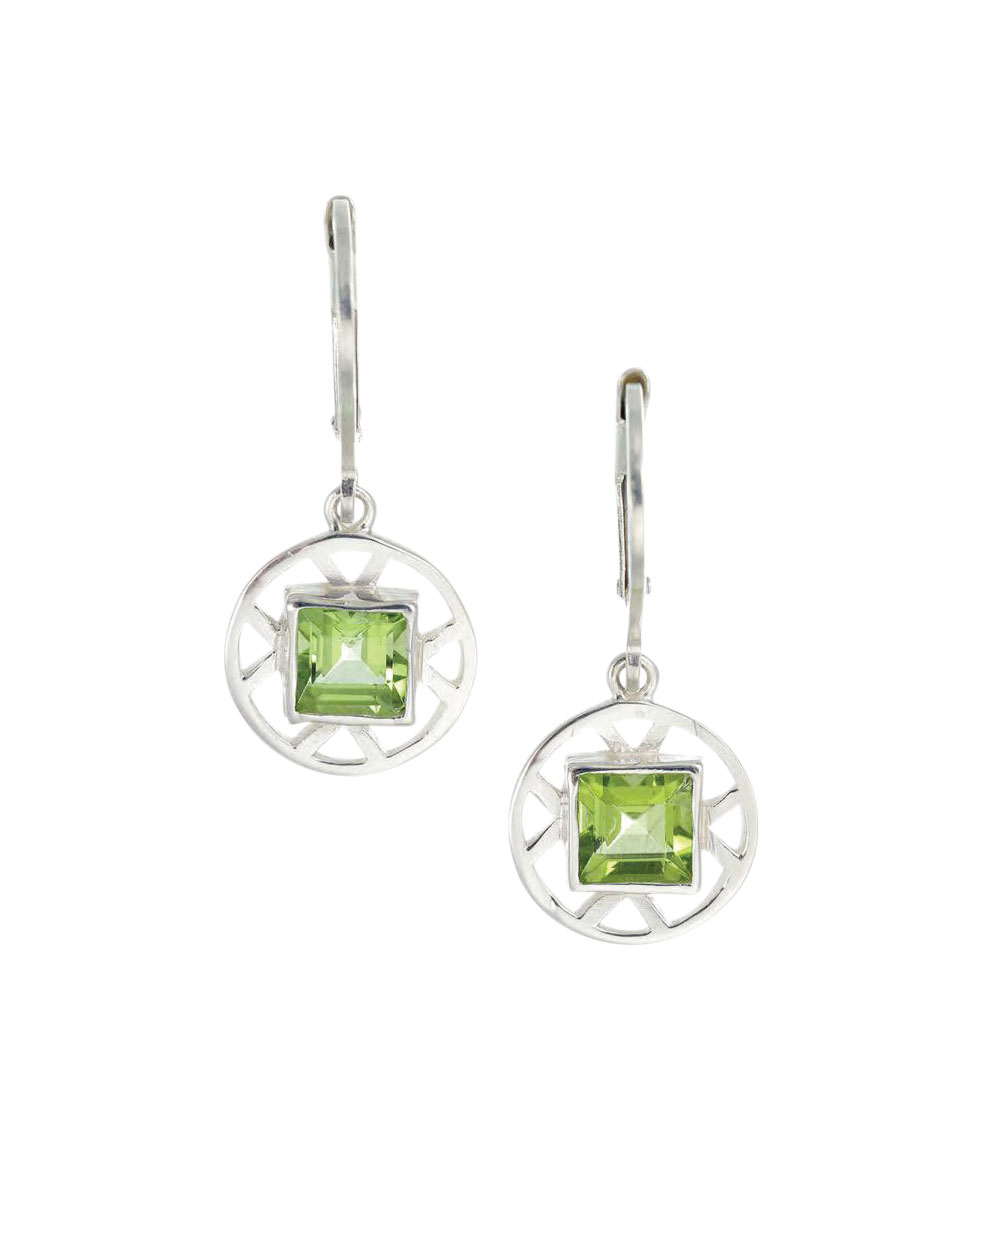 Zoe & Morgan earrings, $158